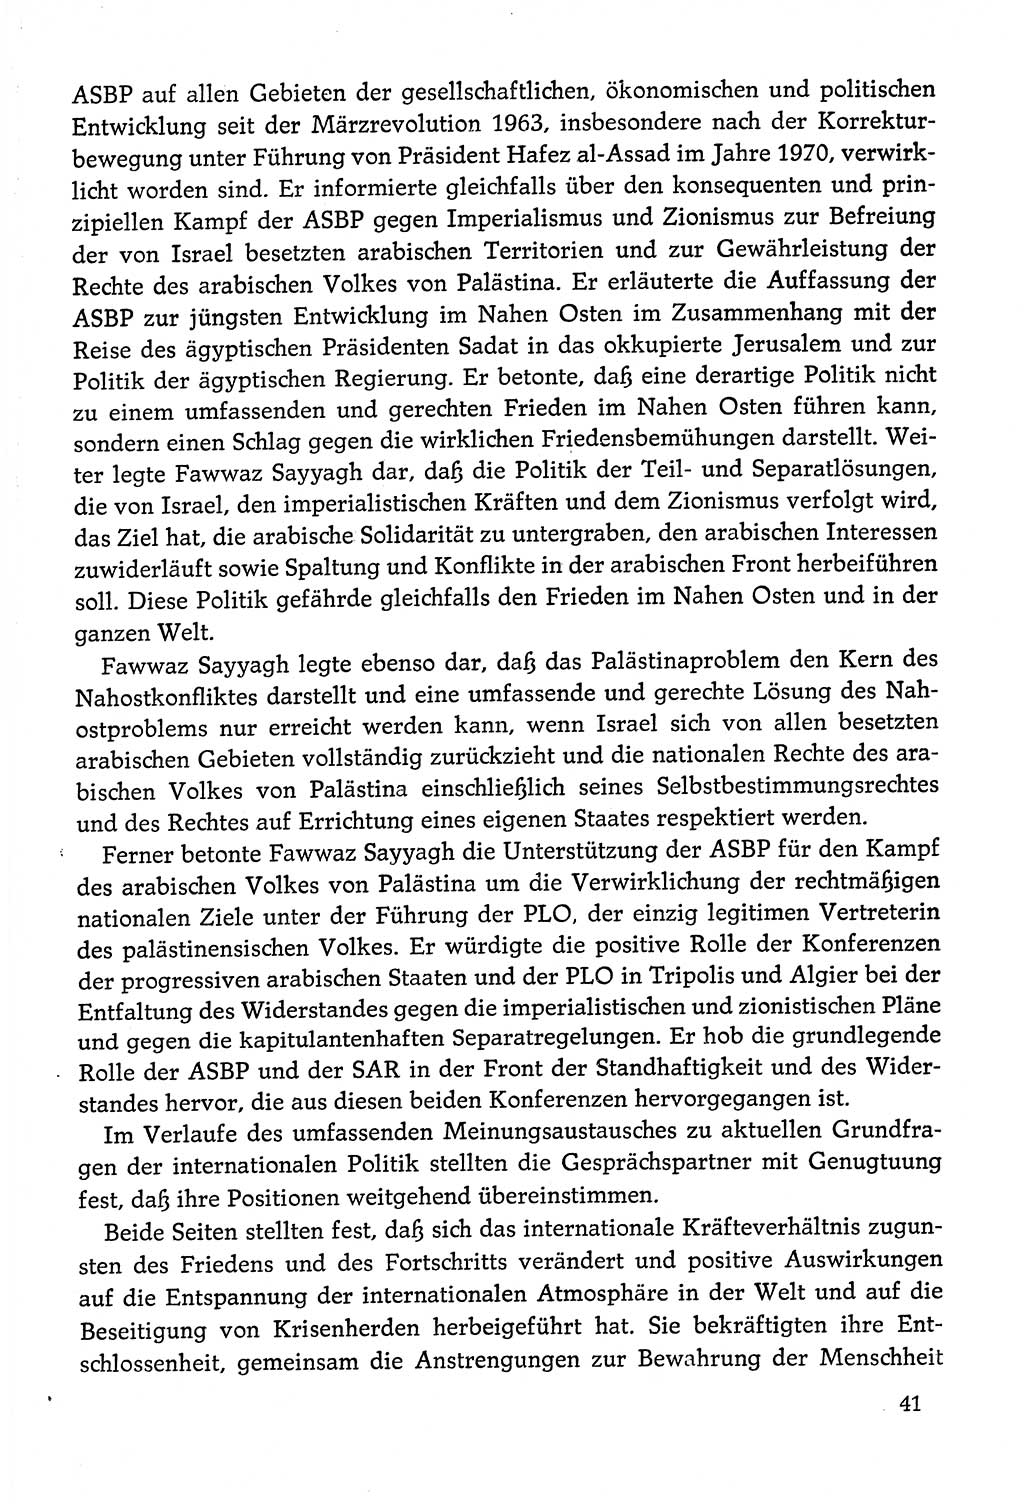 Dokumente der Sozialistischen Einheitspartei Deutschlands (SED) [Deutsche Demokratische Republik (DDR)] 1978-1979, Seite 41 (Dok. SED DDR 1978-1979, S. 41)